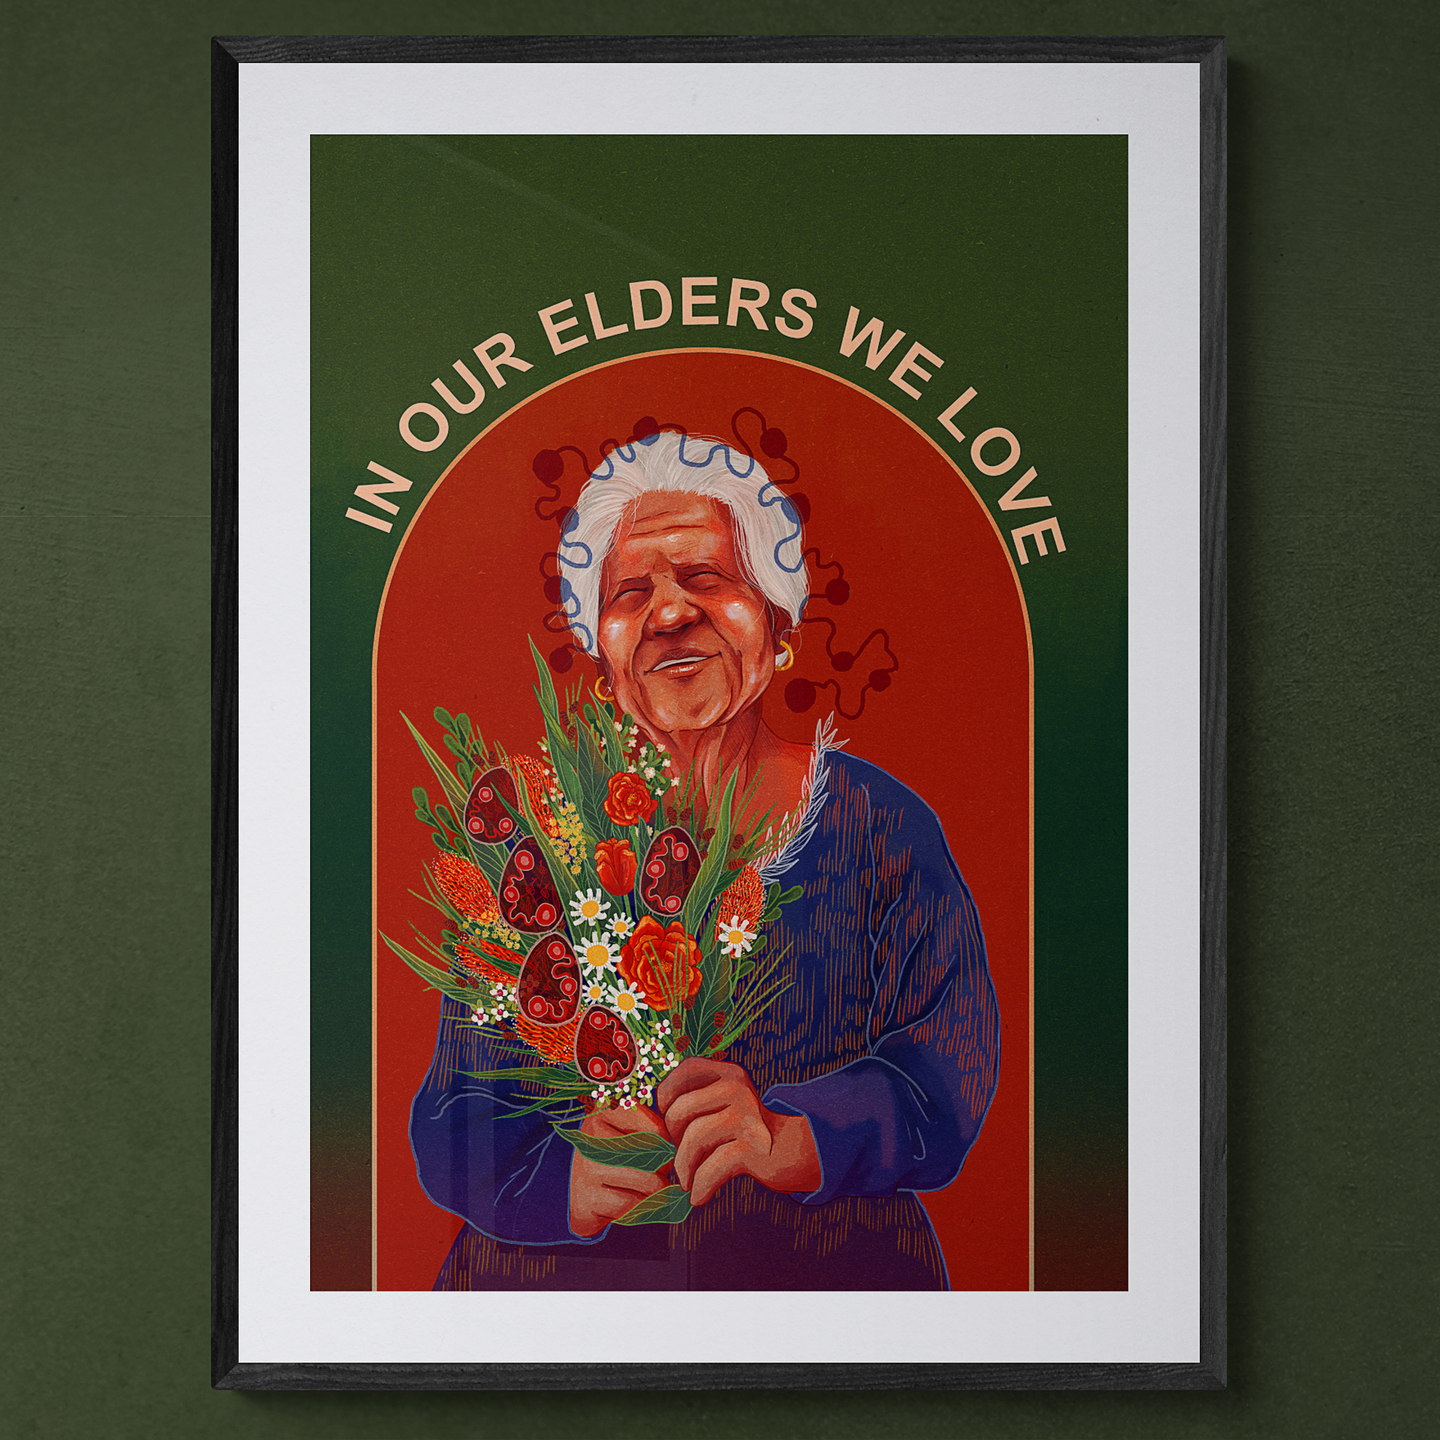 In Our Elders We Love Hahnemühle German Etching Print